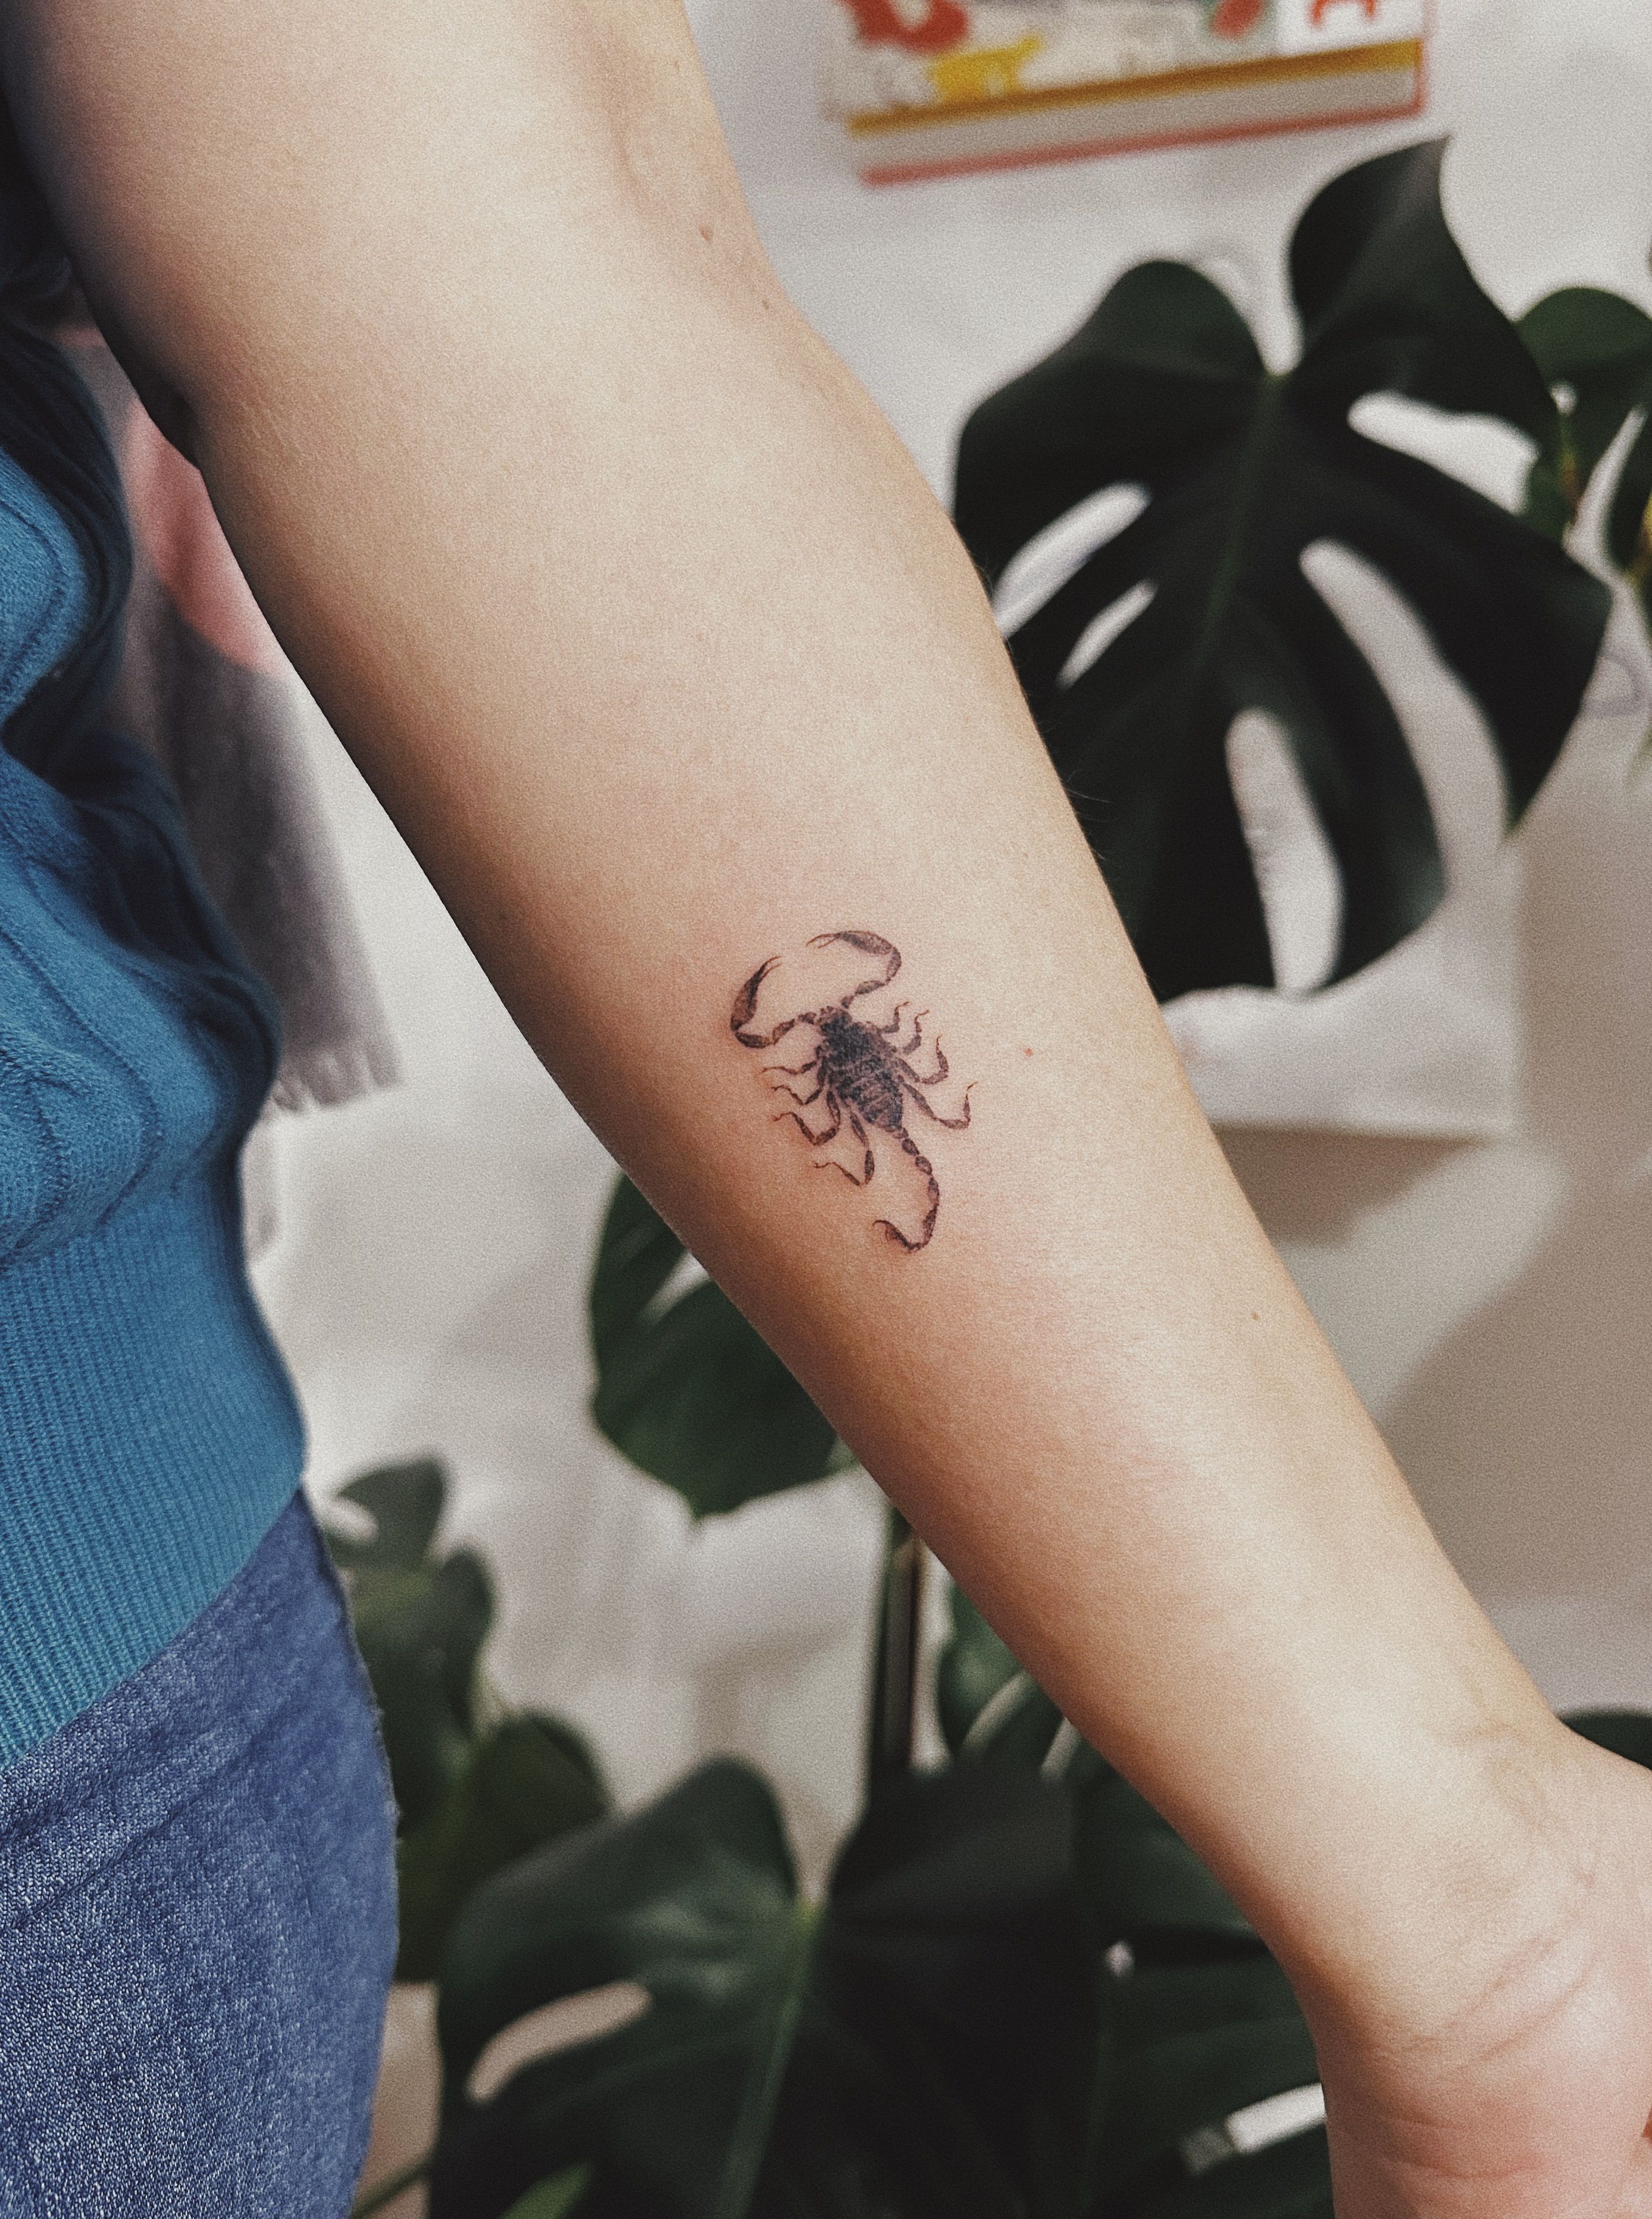 Scorpion Tattoo - Fineline | Small hand tattoos, Simple tattoos for women, Scorpion  tattoo